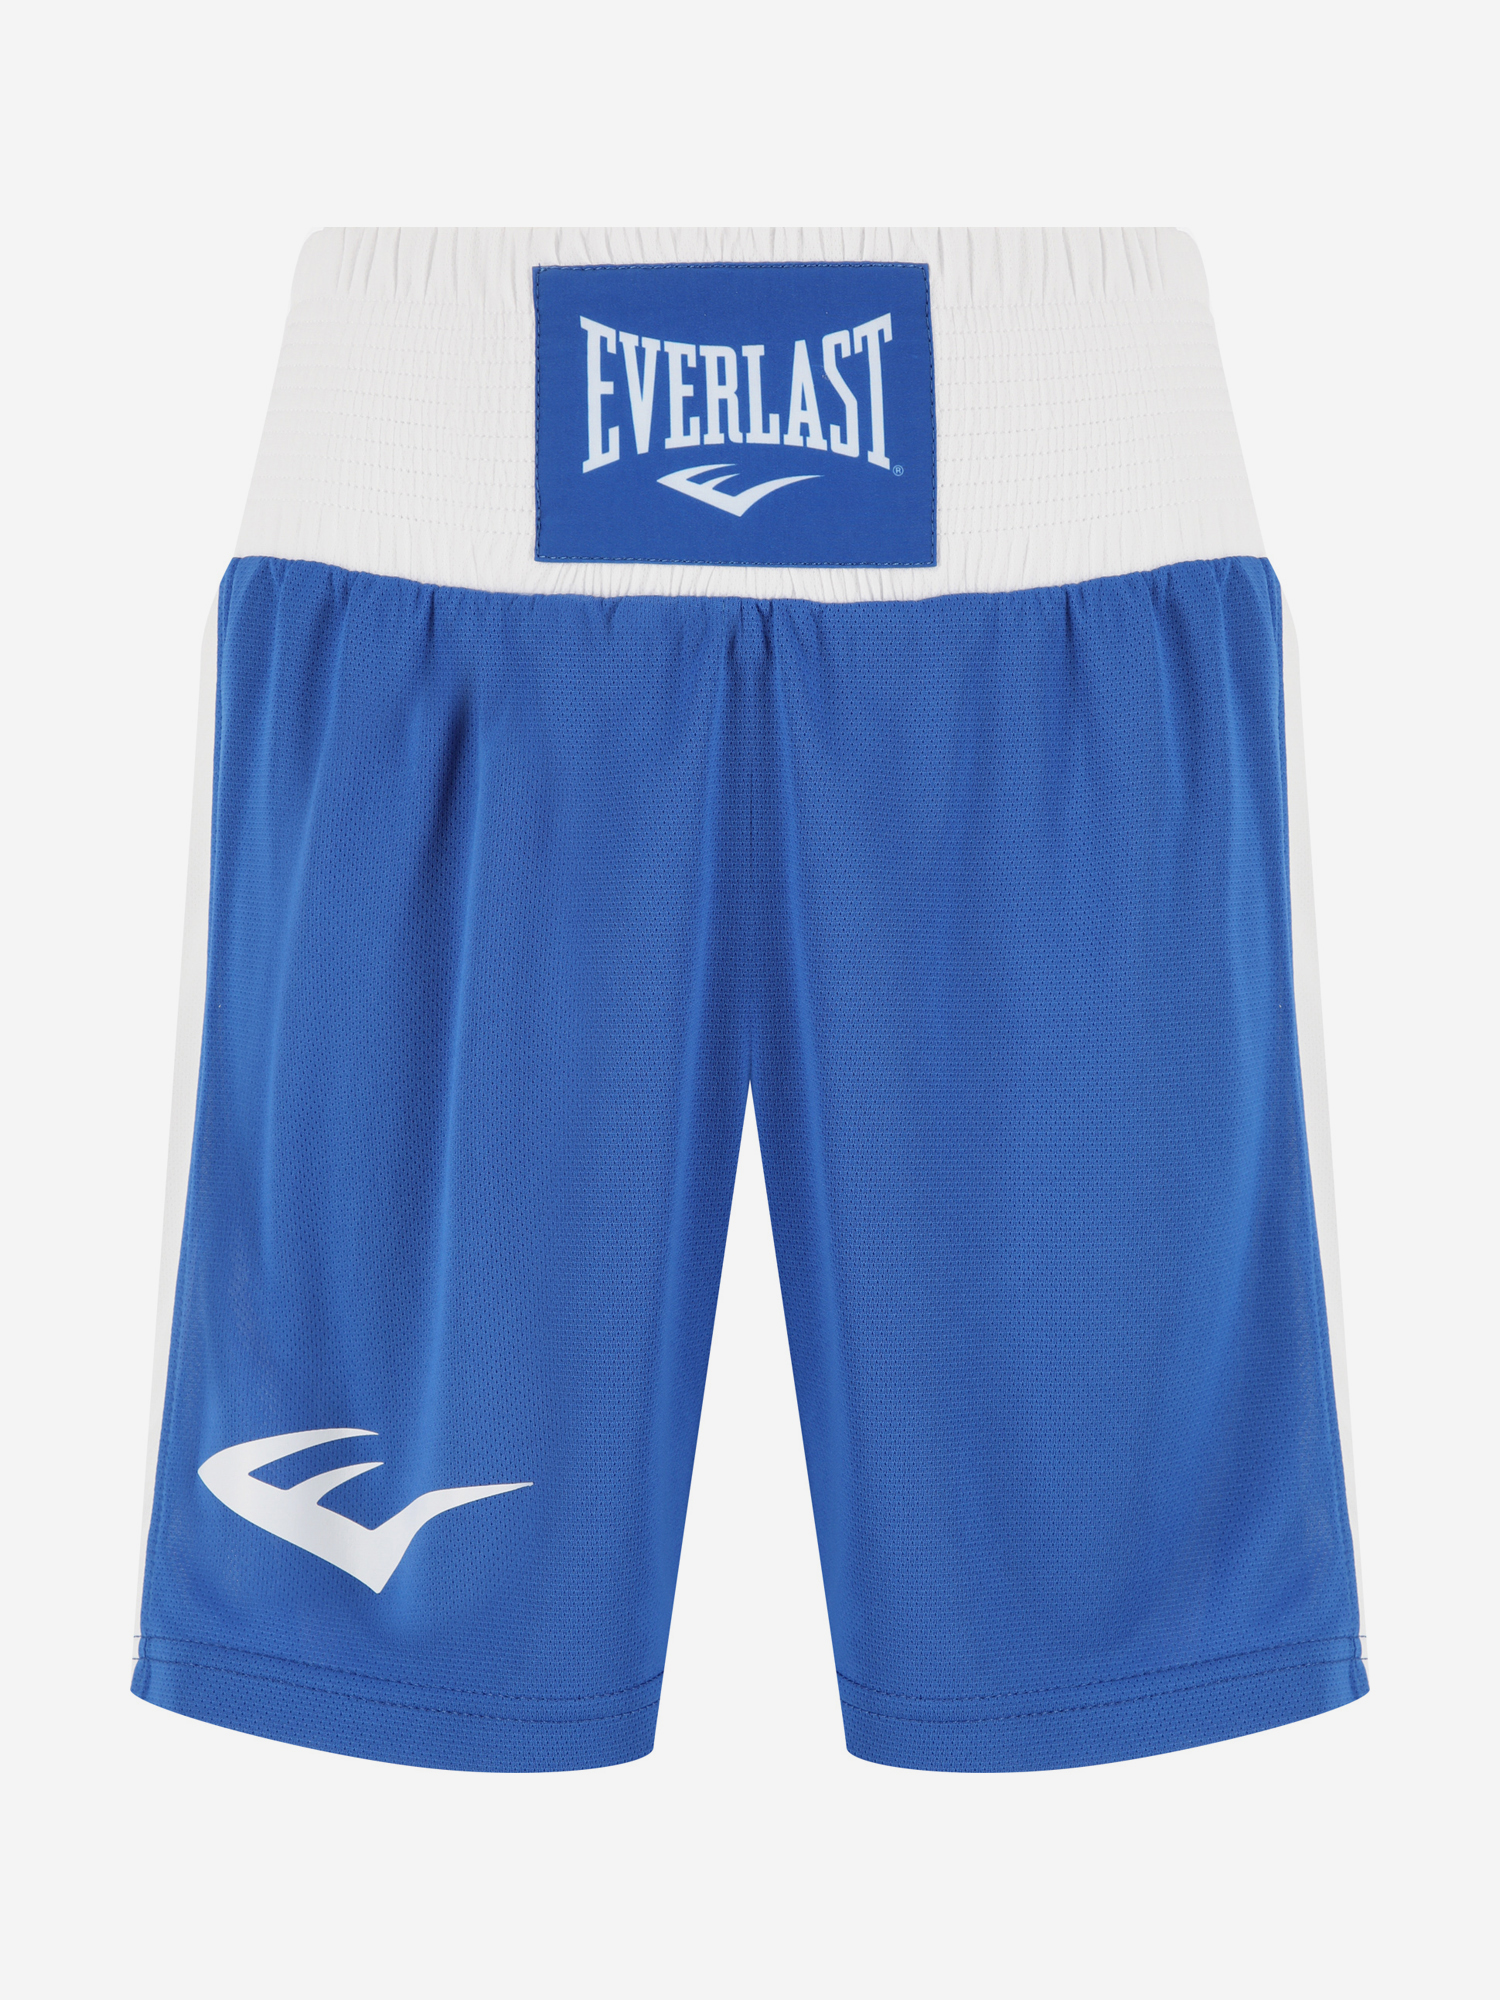 Шорты для бокса Everlast Shorts Elite, Синий перчатки тренировочные everlast spark 10oz бел гео